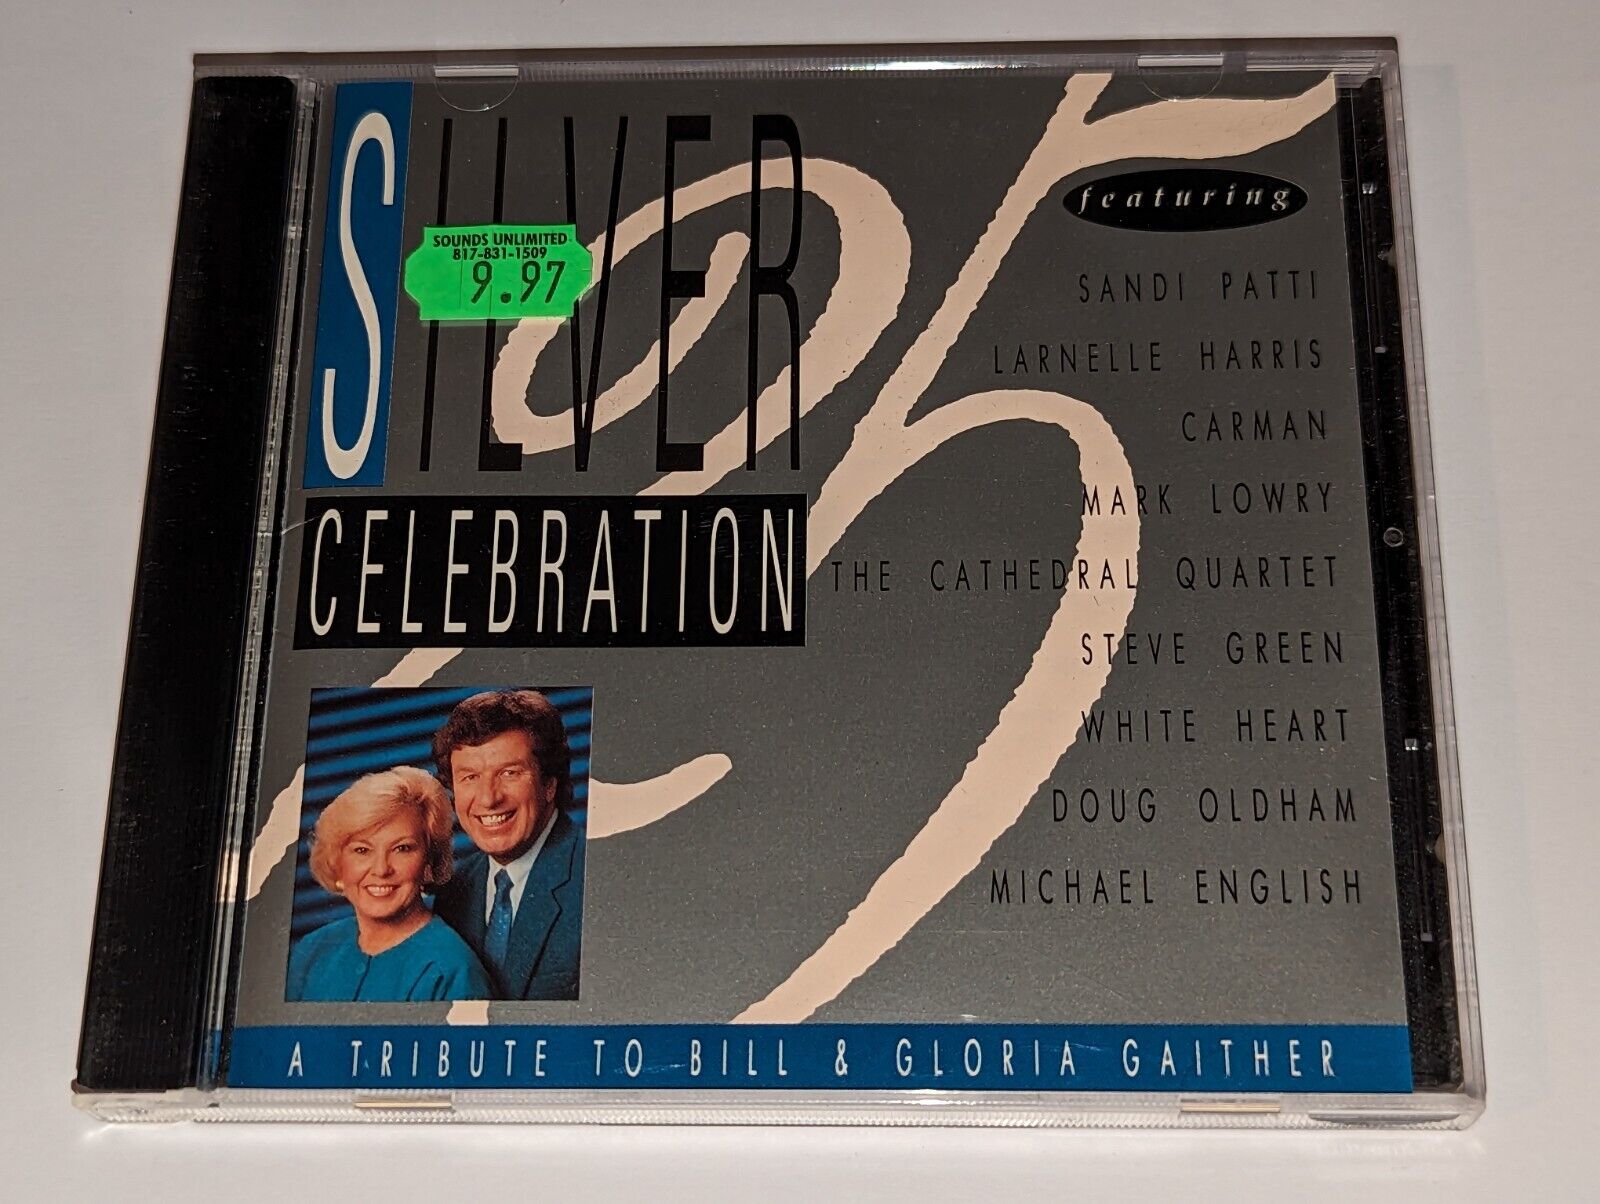 Silver Celebration 25: A Tribute to Bill & Gloria Gaither CD Sandi Patti/Carman+